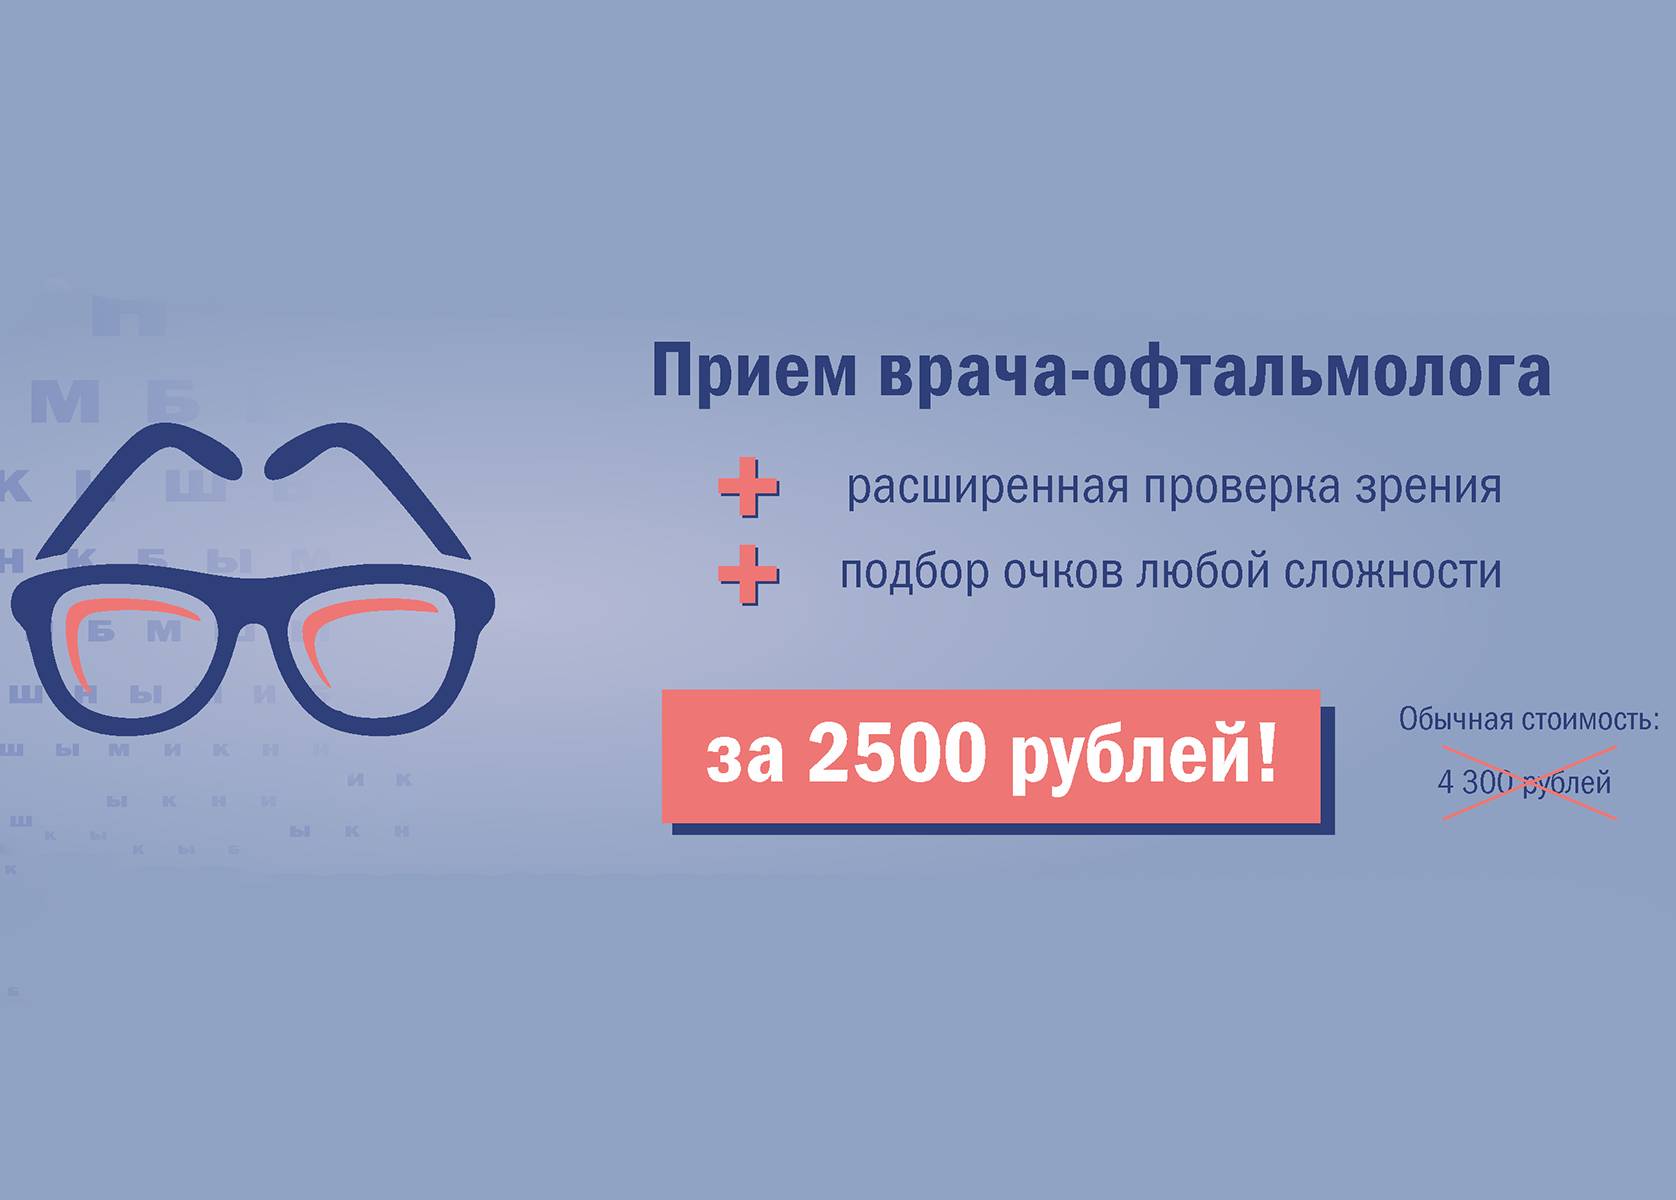 Прием врача-офтальмолога за 2500 рублей!